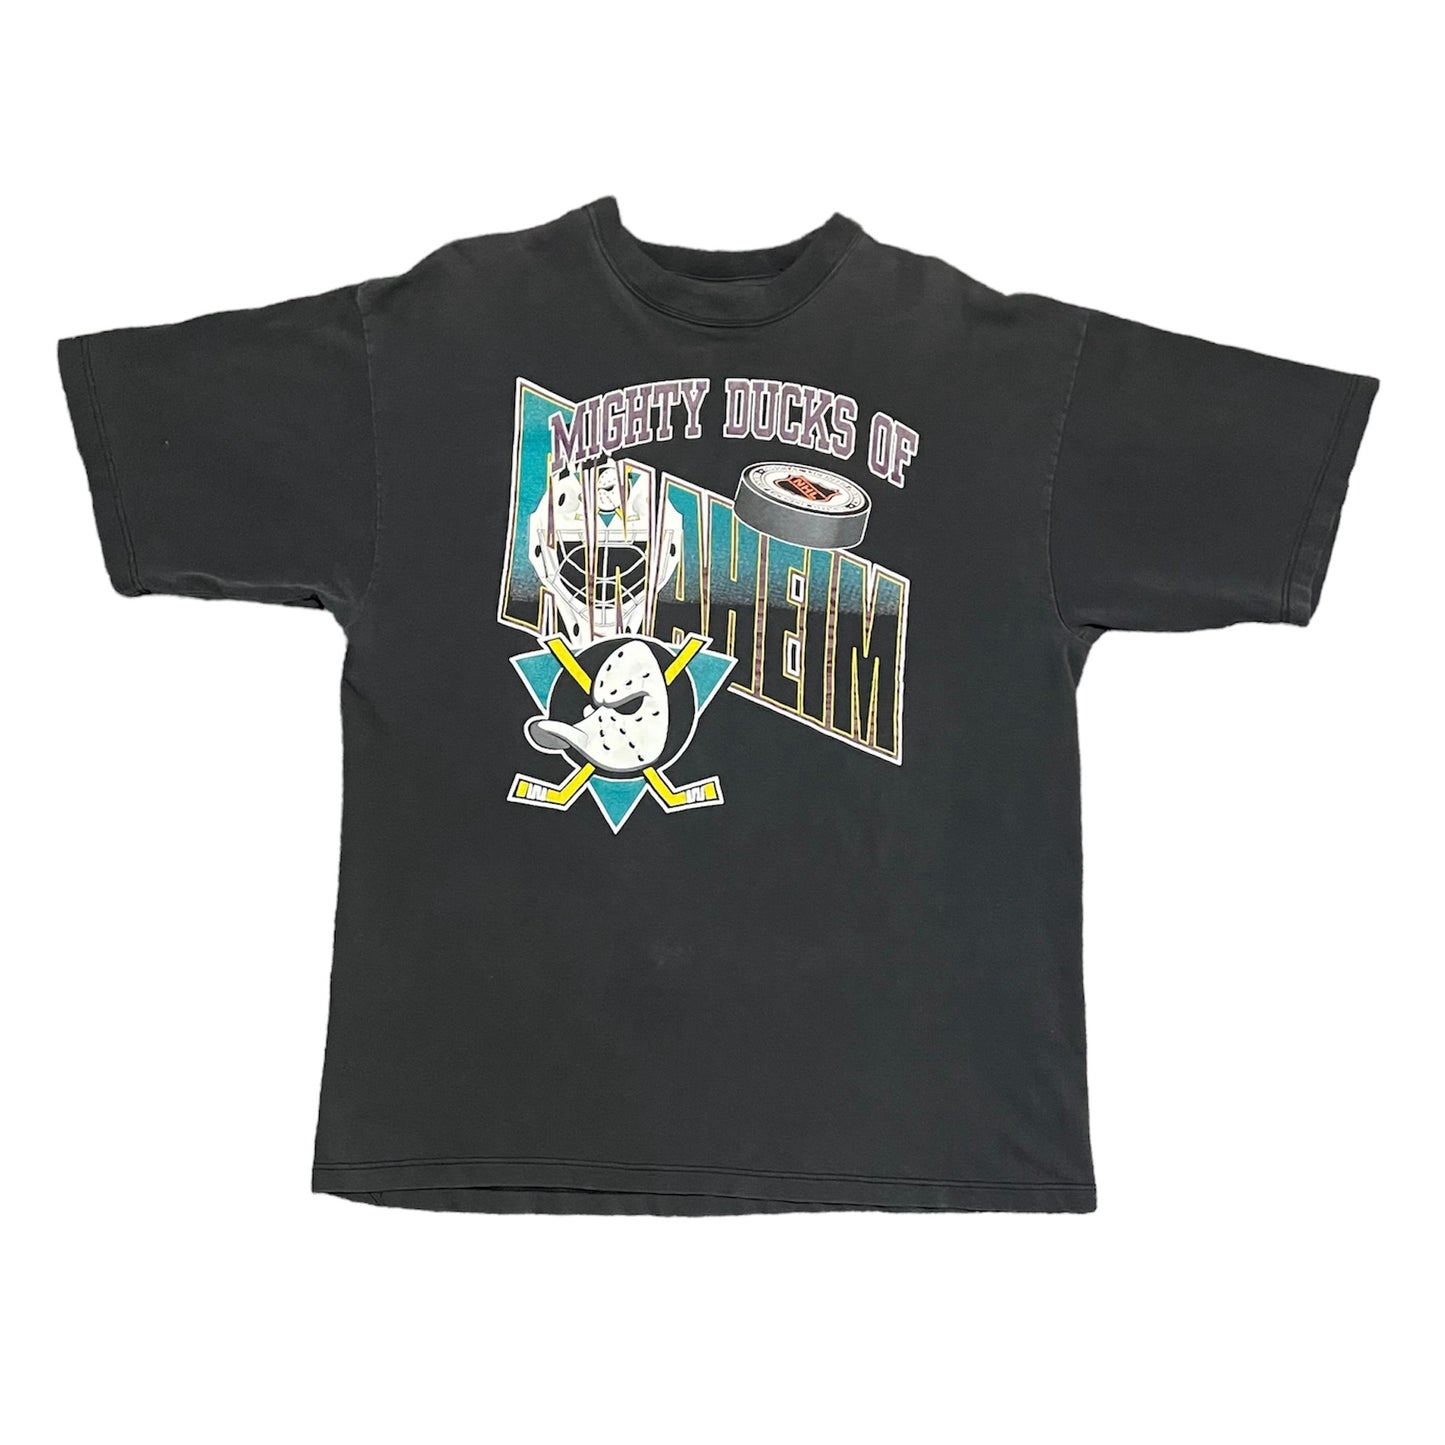 Vintage Mighty Ducks of Anaheim T-Shirt